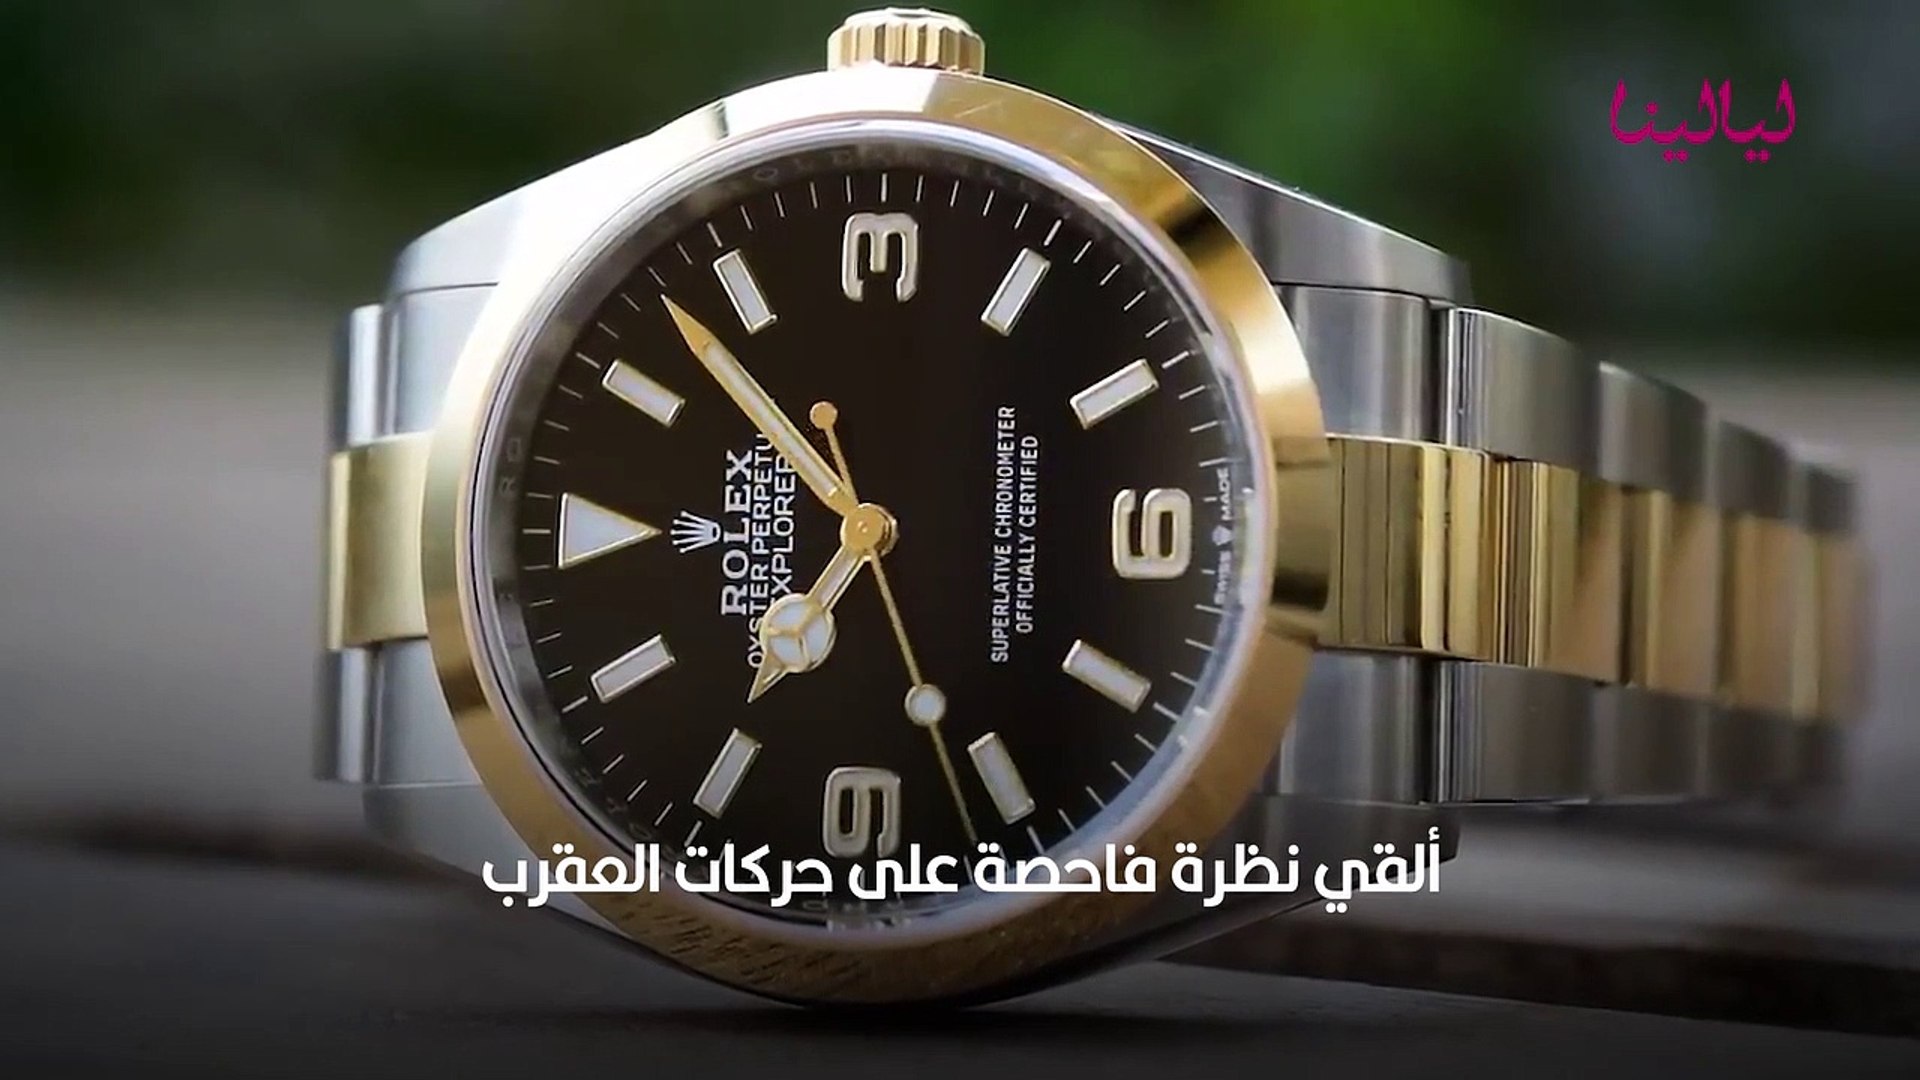 كيف تكتشفين الفرق بين ساعات Rolex الأصلية والمقلدة؟ - فيديو Dailymotion